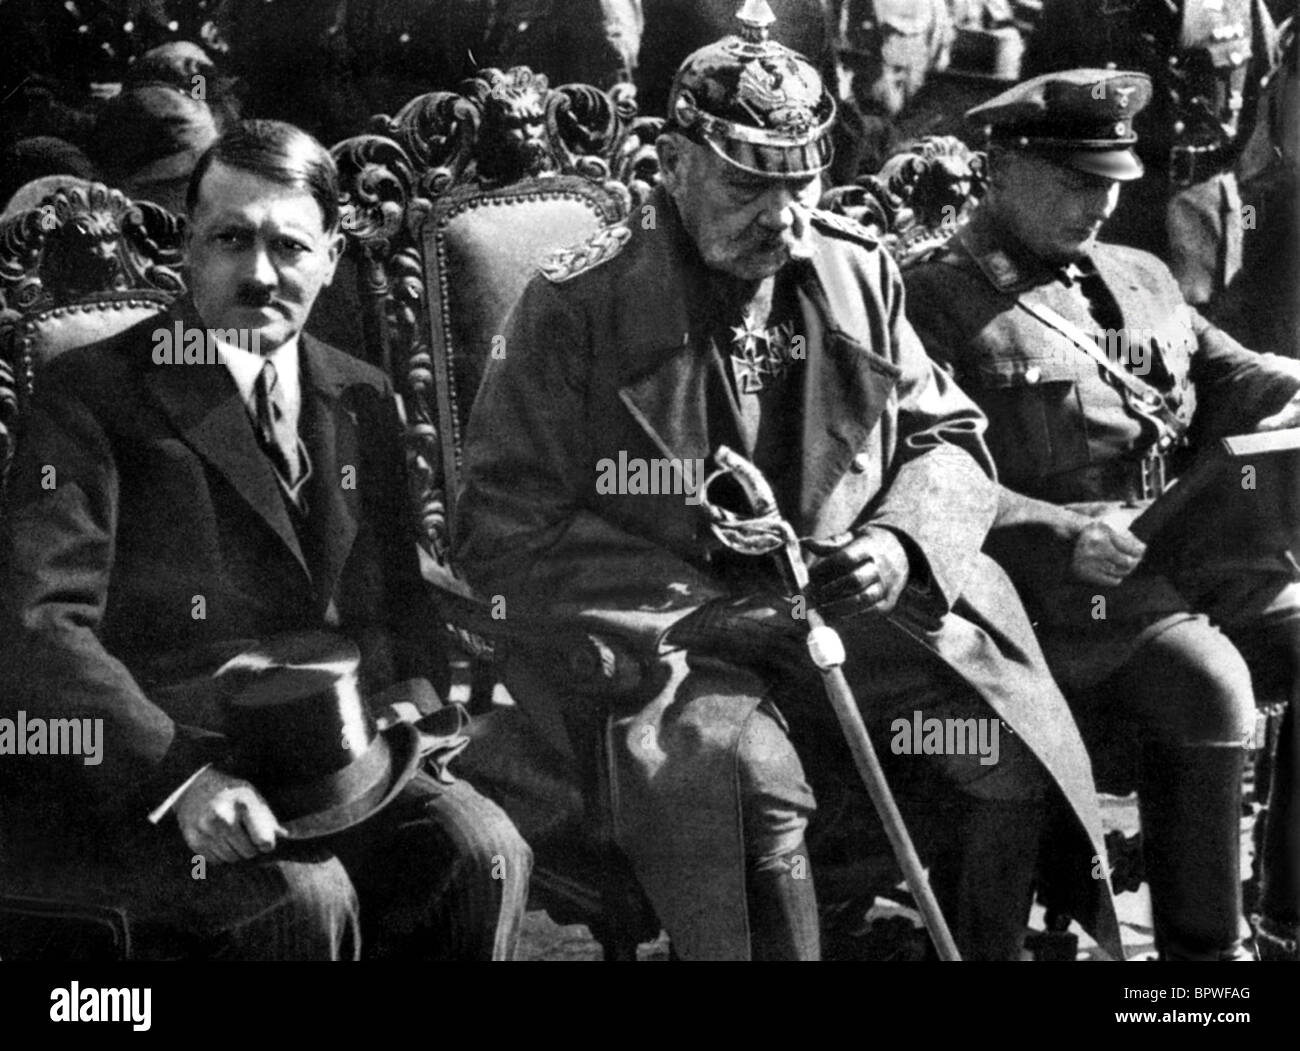 ADOLF HITLER PAUL VON HINDENBURG NAZI LEADER 01 May 1938 Stock Photo